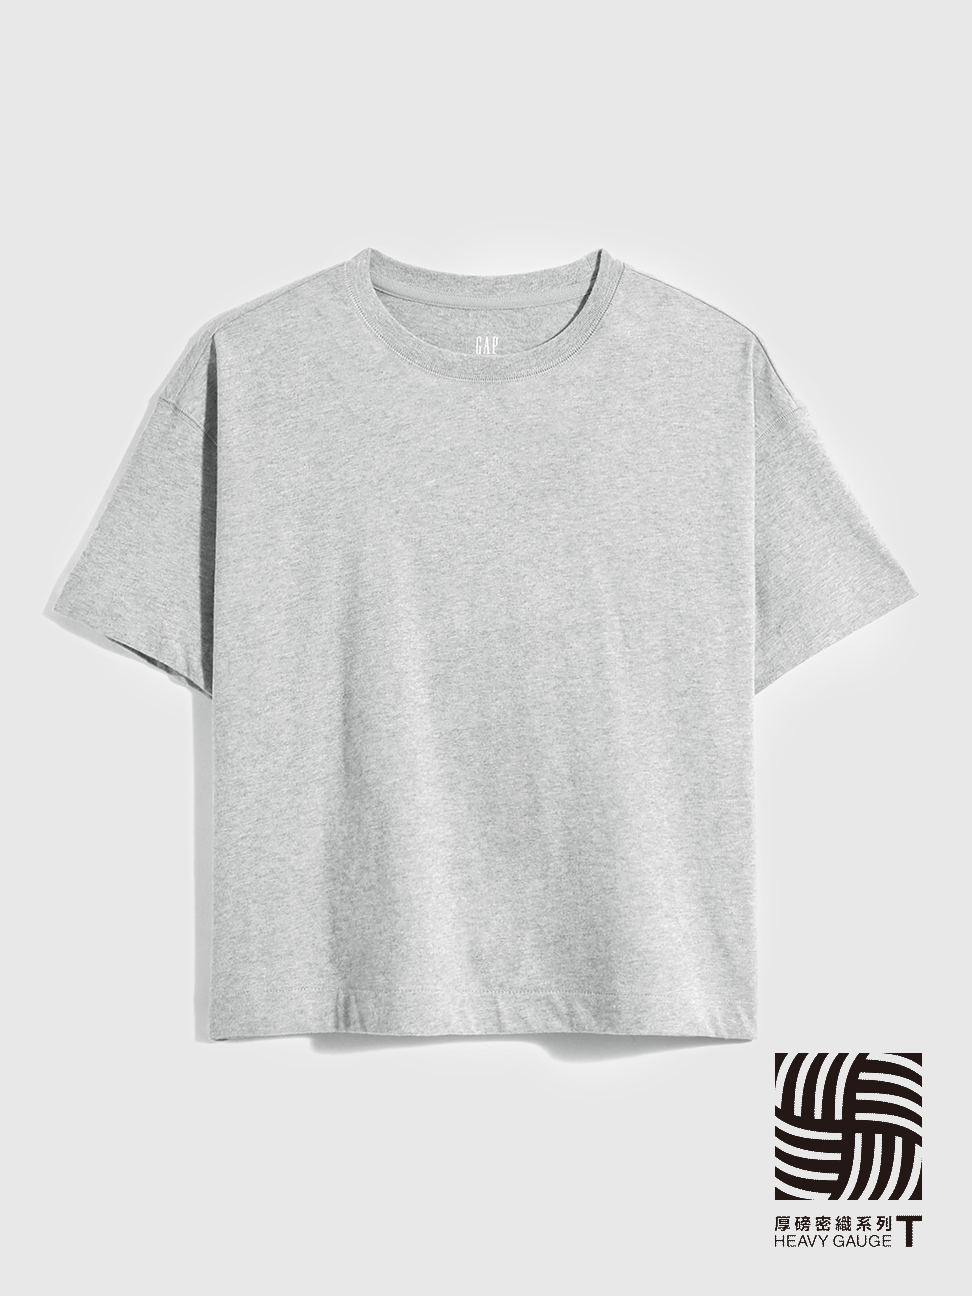 女裝|厚磅密織 碳素軟磨系列 基本款條紋/素色短袖T恤